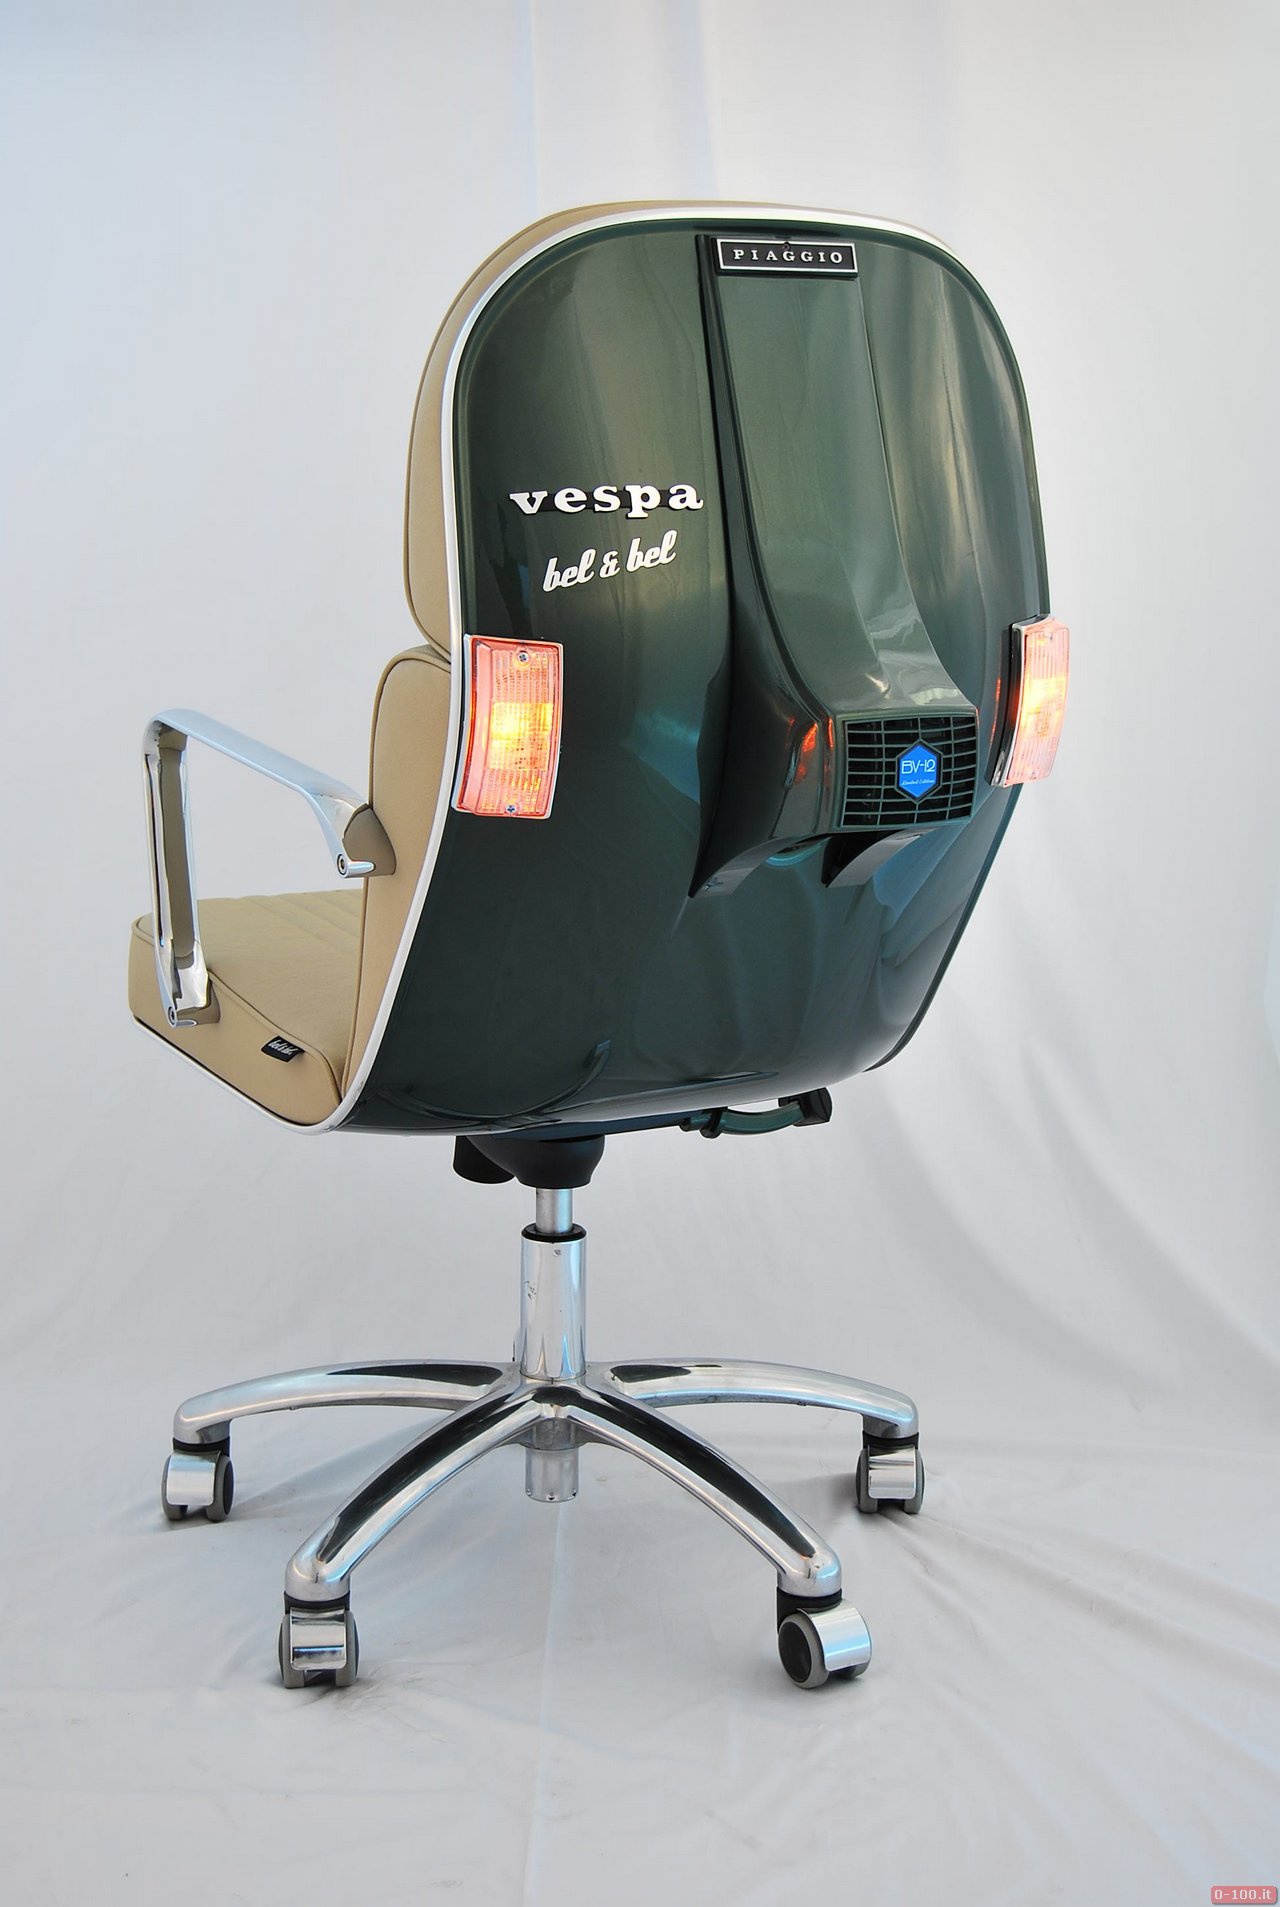 Vespa office chairs by Bel &Bel_0-100_3